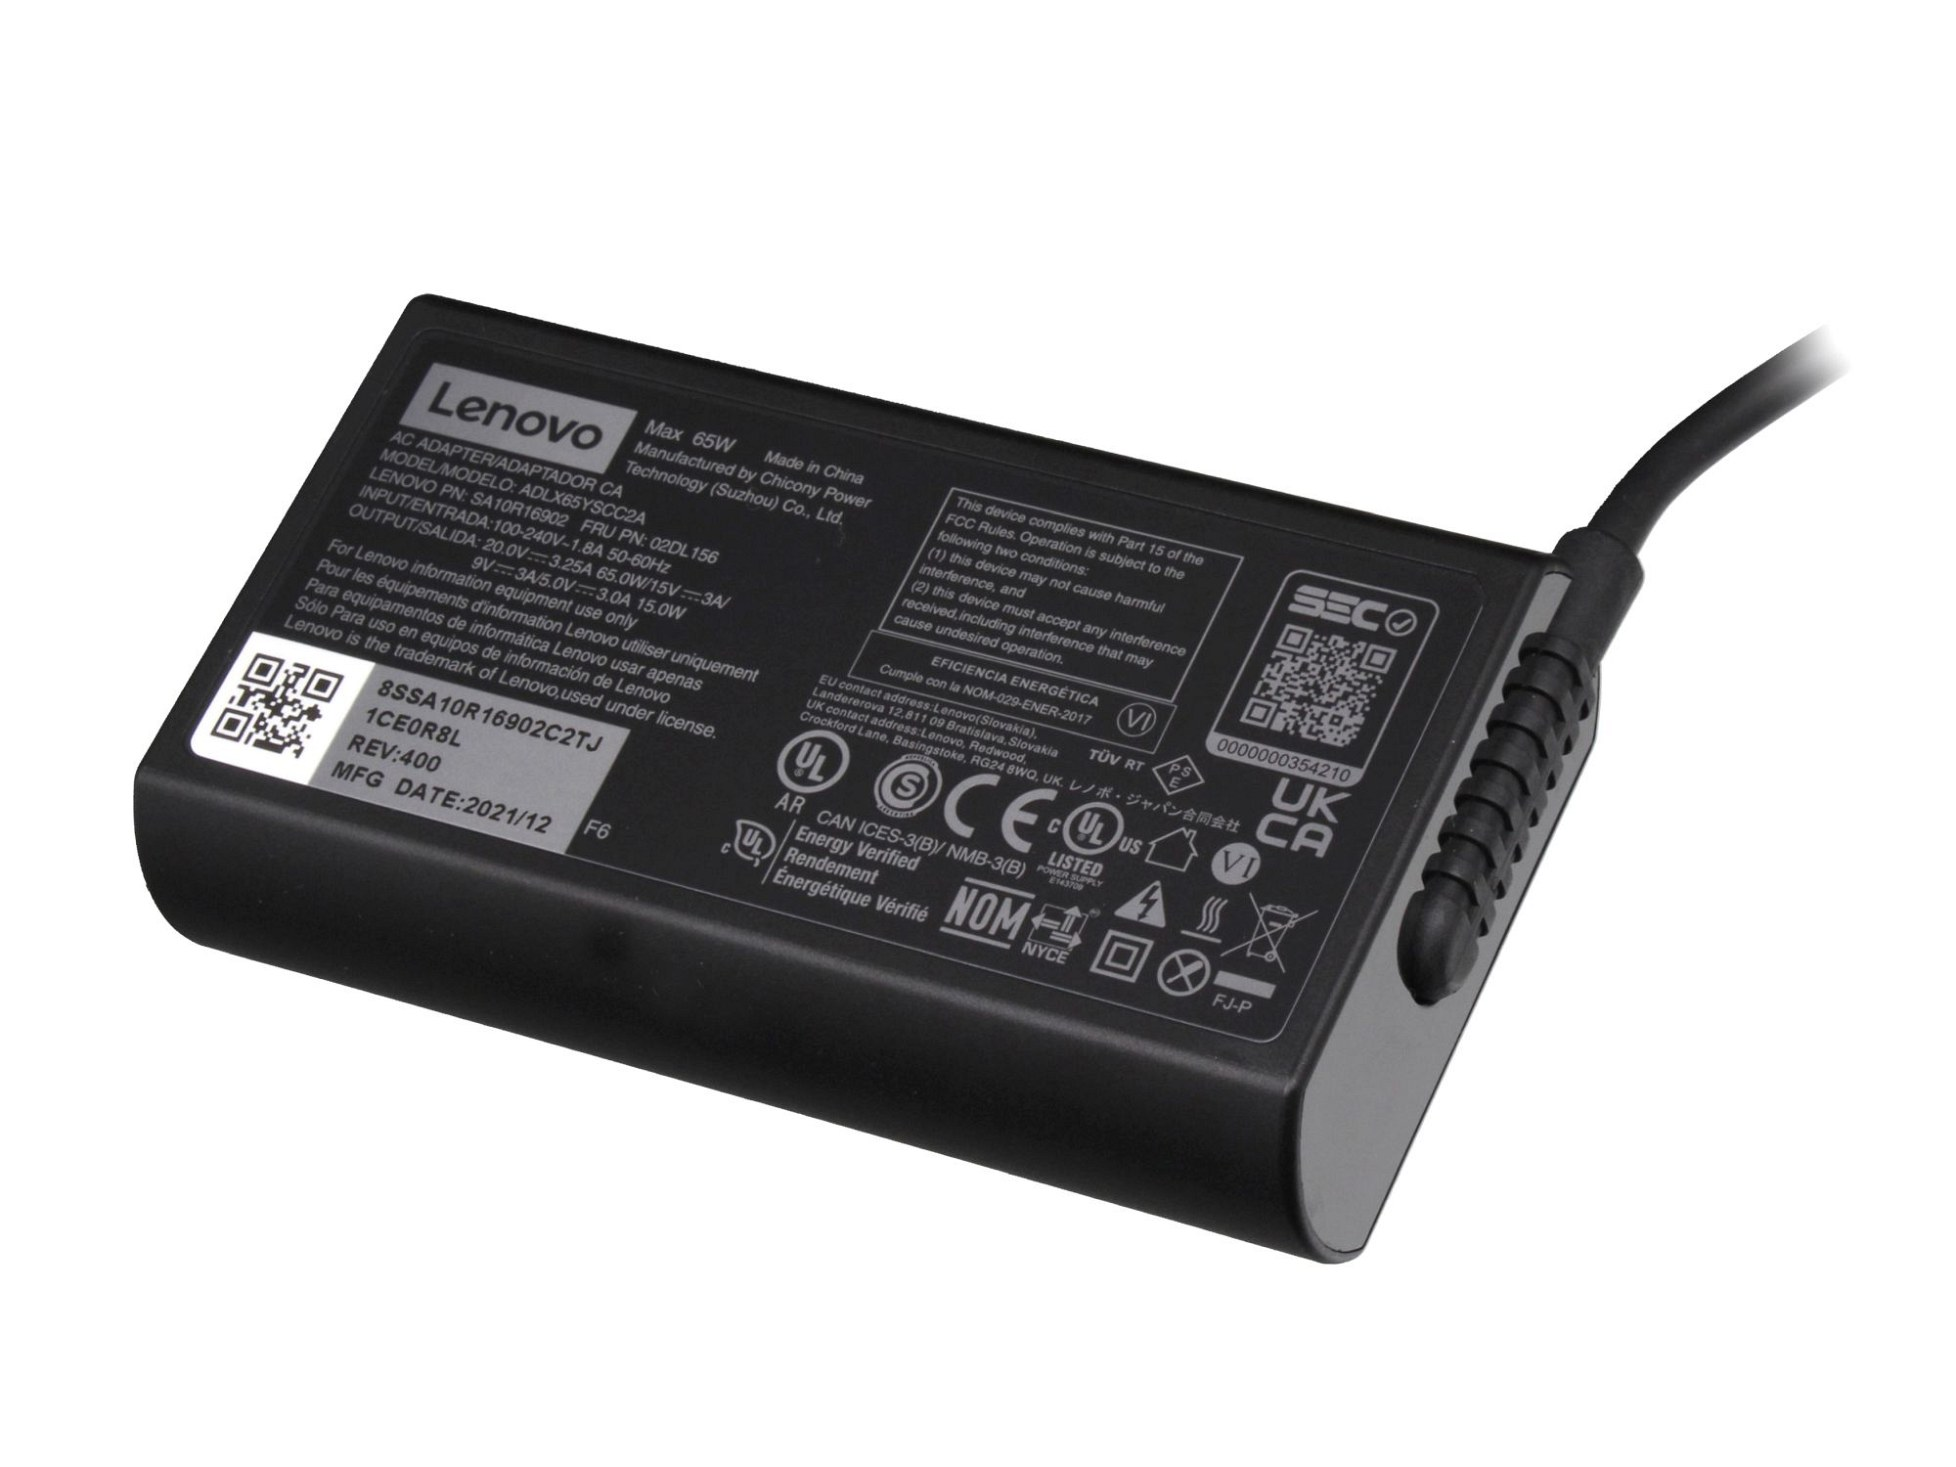 LENOVO 5A11J62100 abgerundetes USB-C Netzteil Watt Original 65